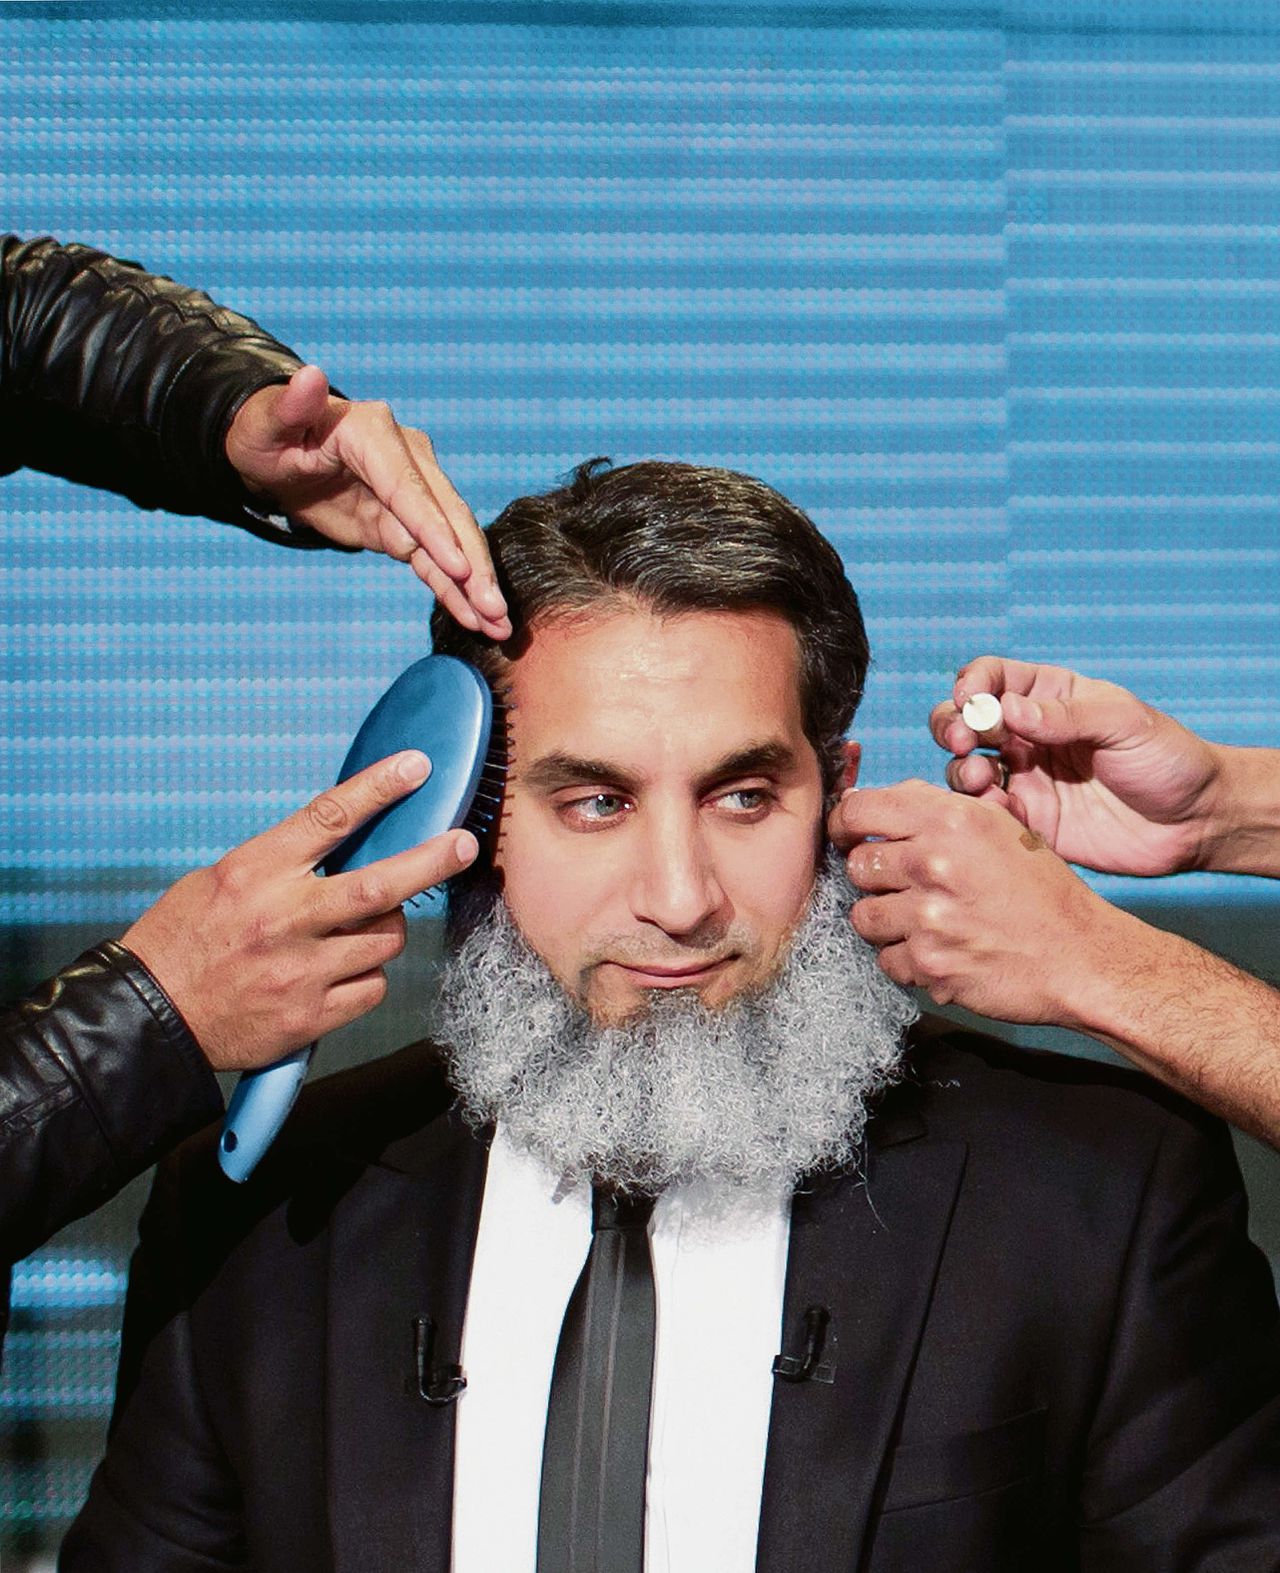 Bassem Youssef wordt opgemaakt voor een scène waarin hij een ultraconservatieve presidentskandidaat speelt.